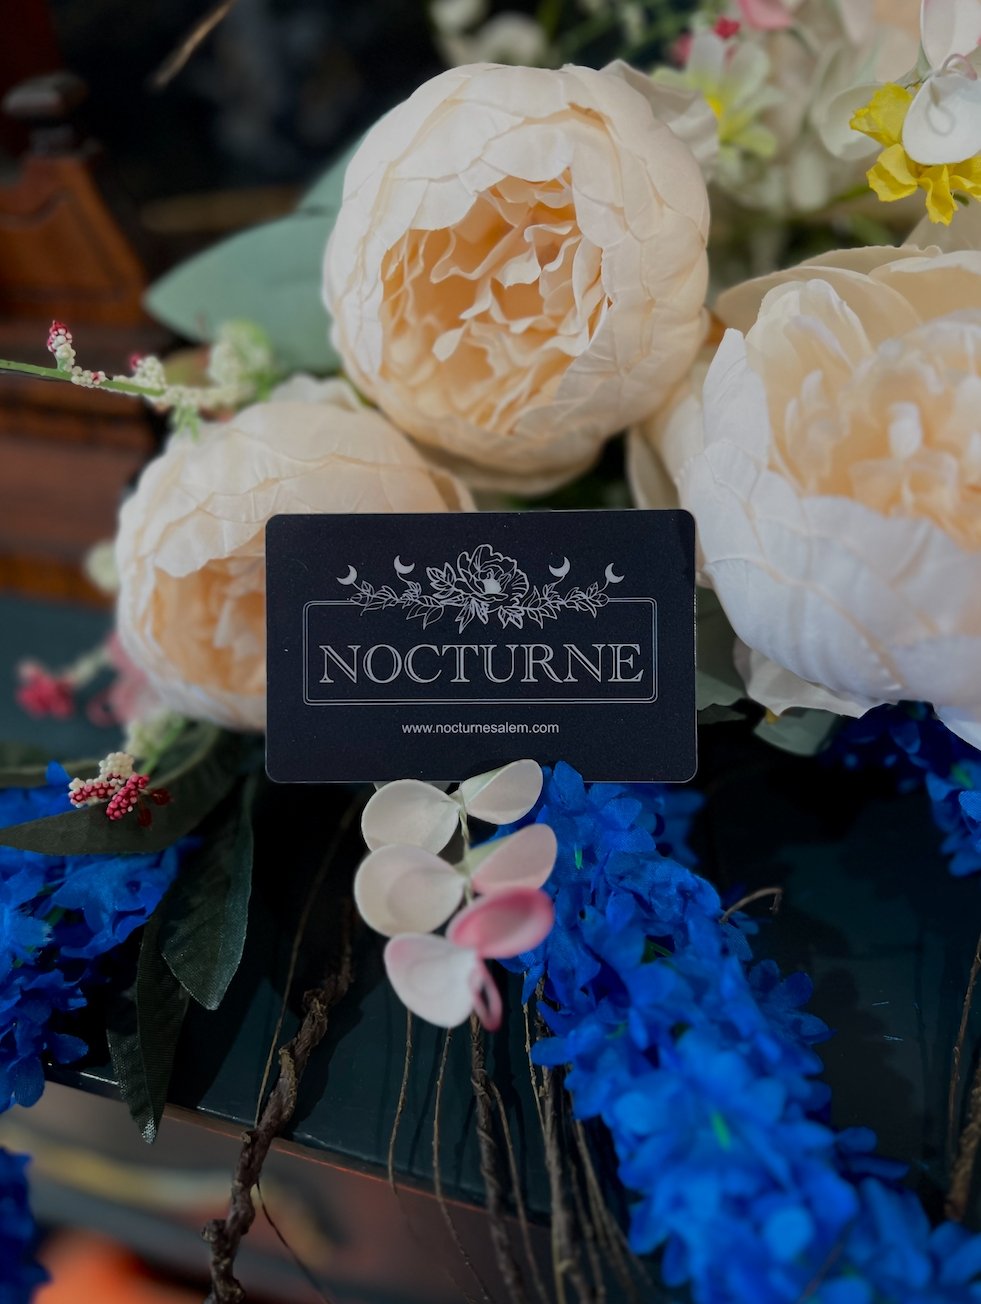 Nocturne Gift Card - Nocturne LLC